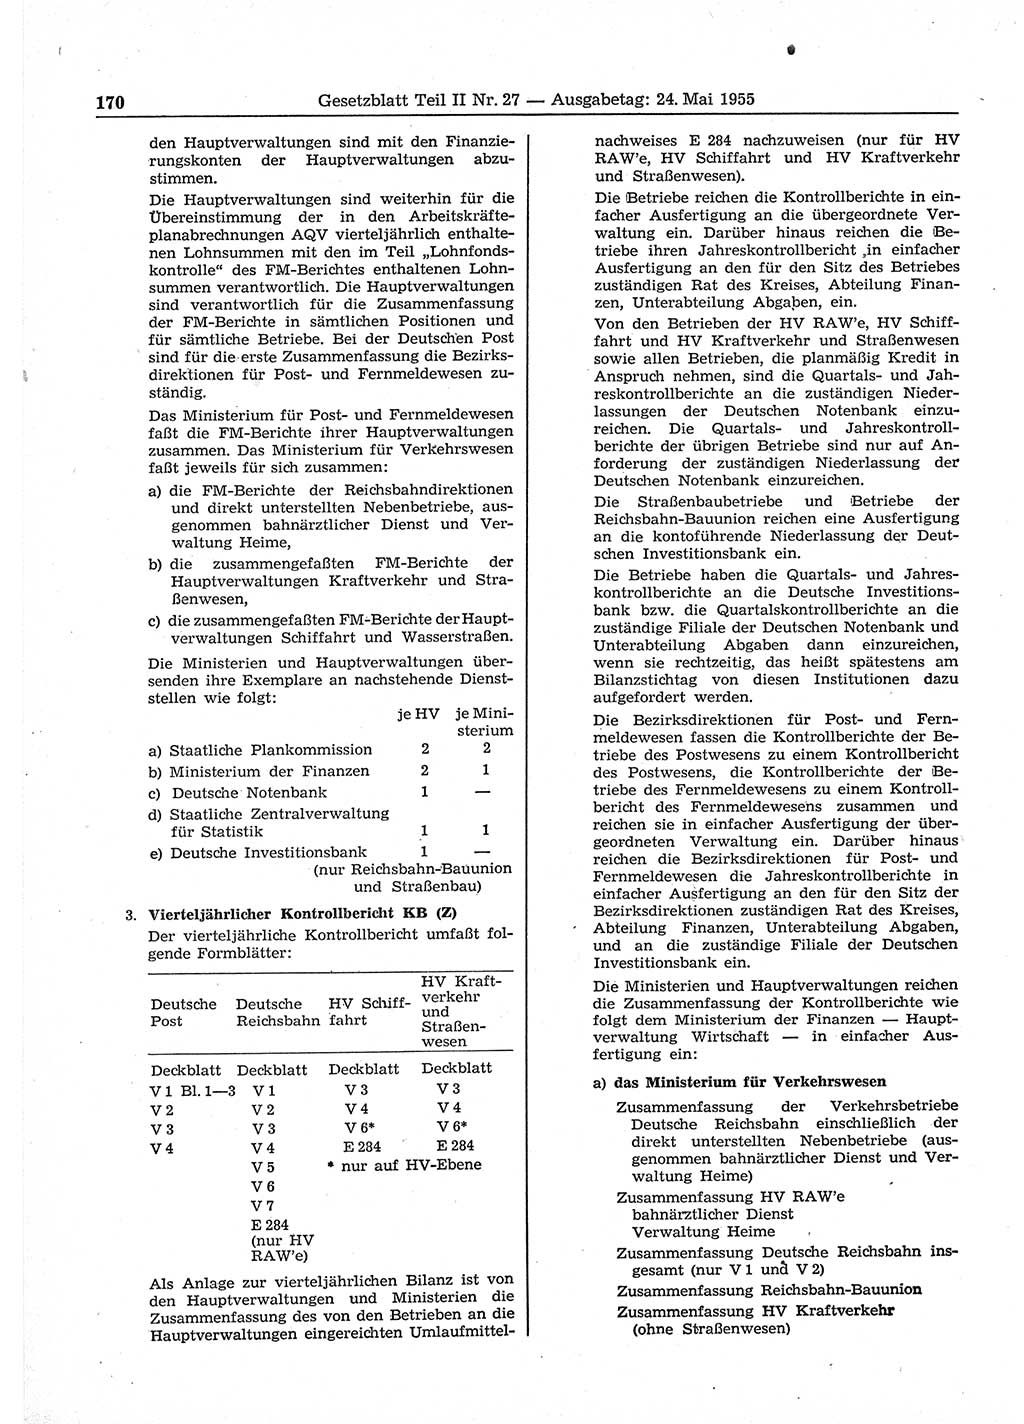 Gesetzblatt (GBl.) der Deutschen Demokratischen Republik (DDR) Teil ⅠⅠ 1955, Seite 170 (GBl. DDR ⅠⅠ 1955, S. 170)